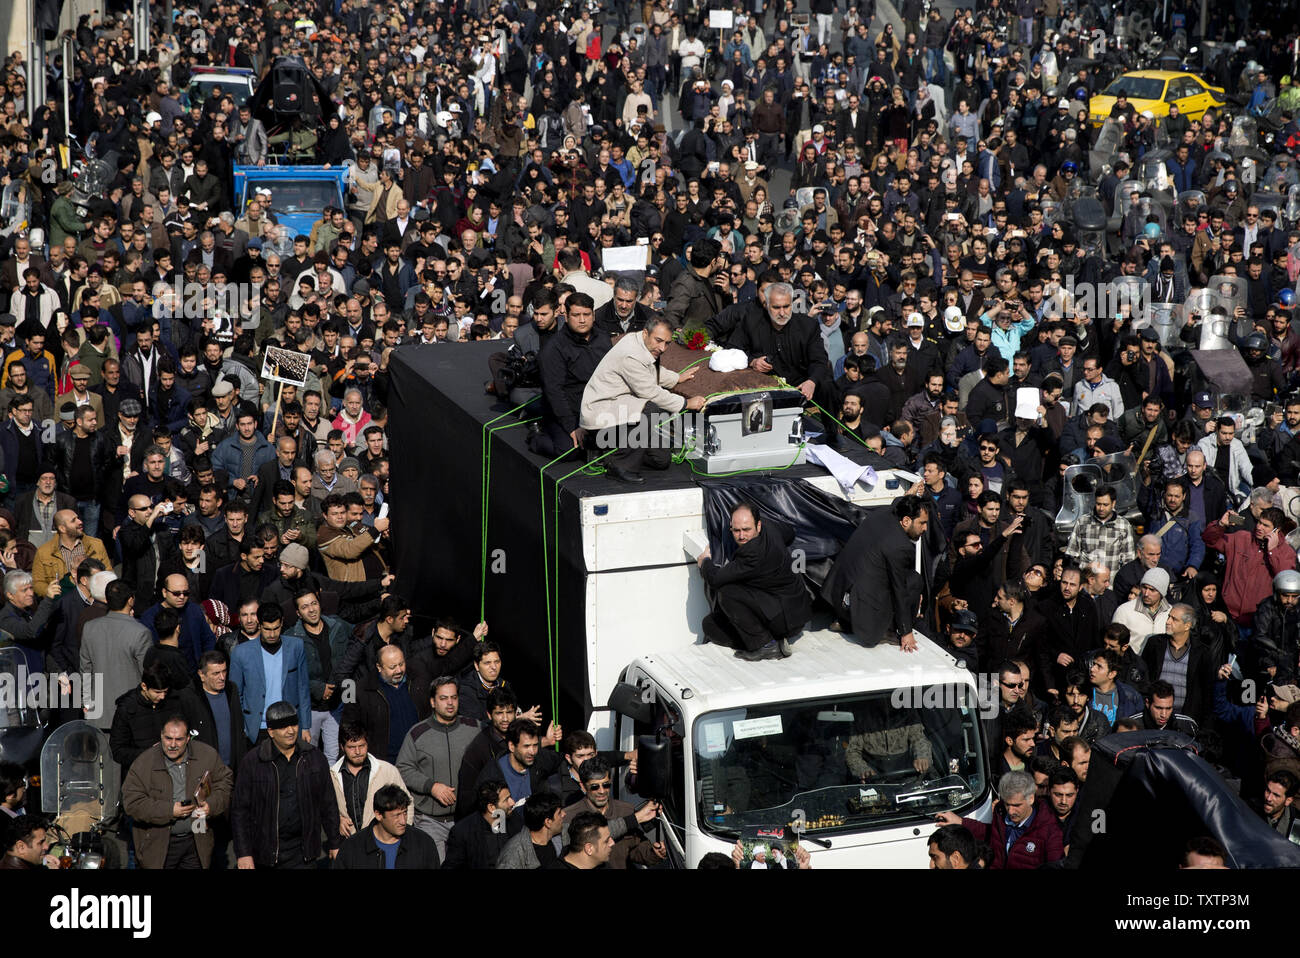 Hunderttausende Iraner nehmen an der Trauerfeier des ehemaligen Präsidenten Akbar Hashemi Rafsanjani in Teheran, Iran, am 10. Januar 2017. Supreme Leader Ayatollah Ali Khamenei führte die Gebete an der Zeremonie. Rafsanjani, eine der letzten großen Persönlichkeiten der Revolution von 1979, die später für die Reformen und die Annäherung an den Westen geschoben, starb im Alter von 82 Jahren am 8. Januar 2017. UPI Stockfoto